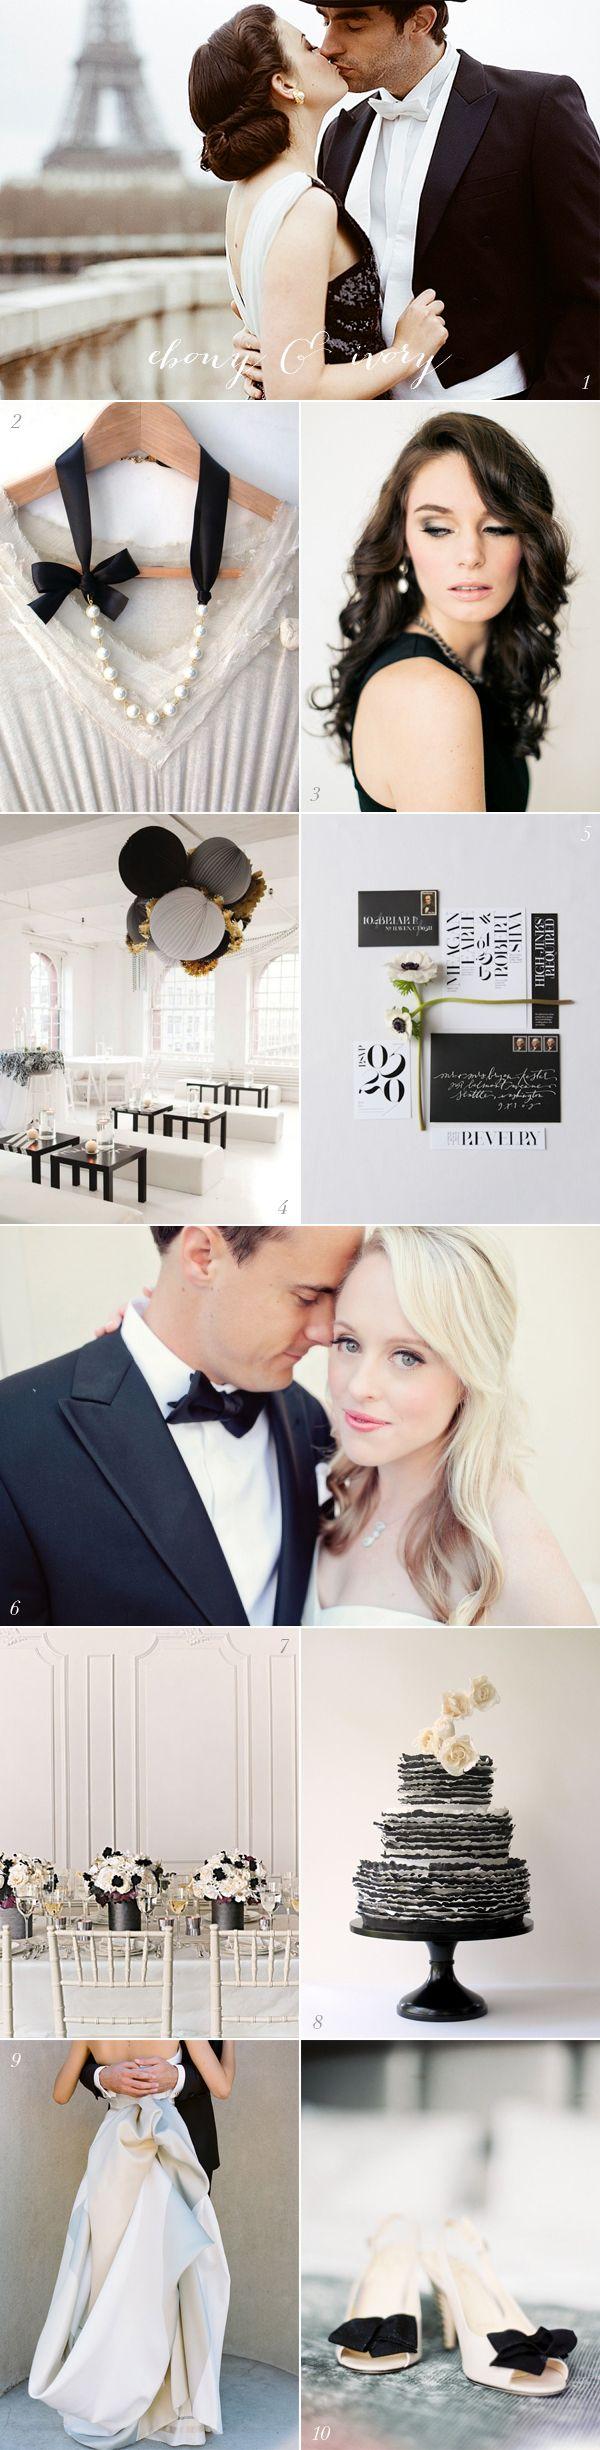 زفاف - عرس الألوان: أسود أبيض